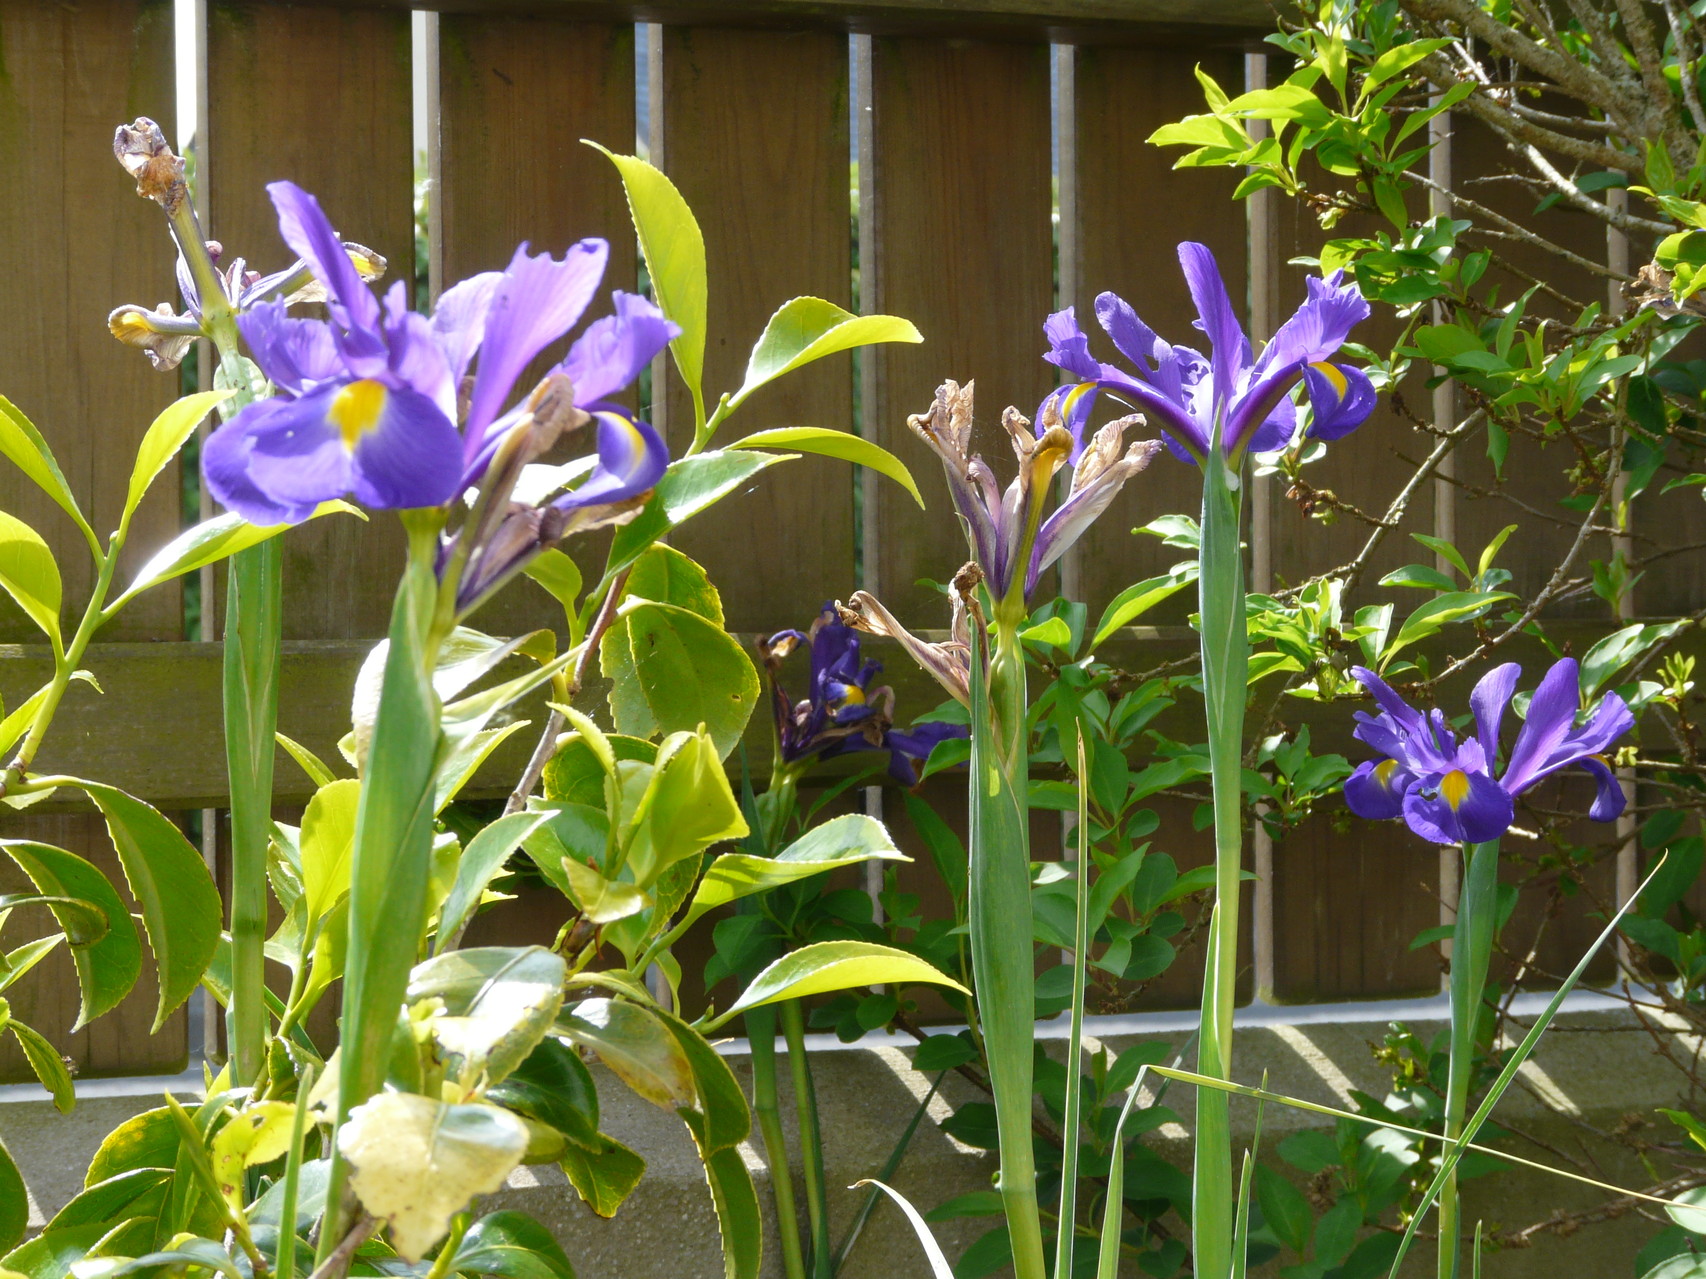 Les iris sous le soleil